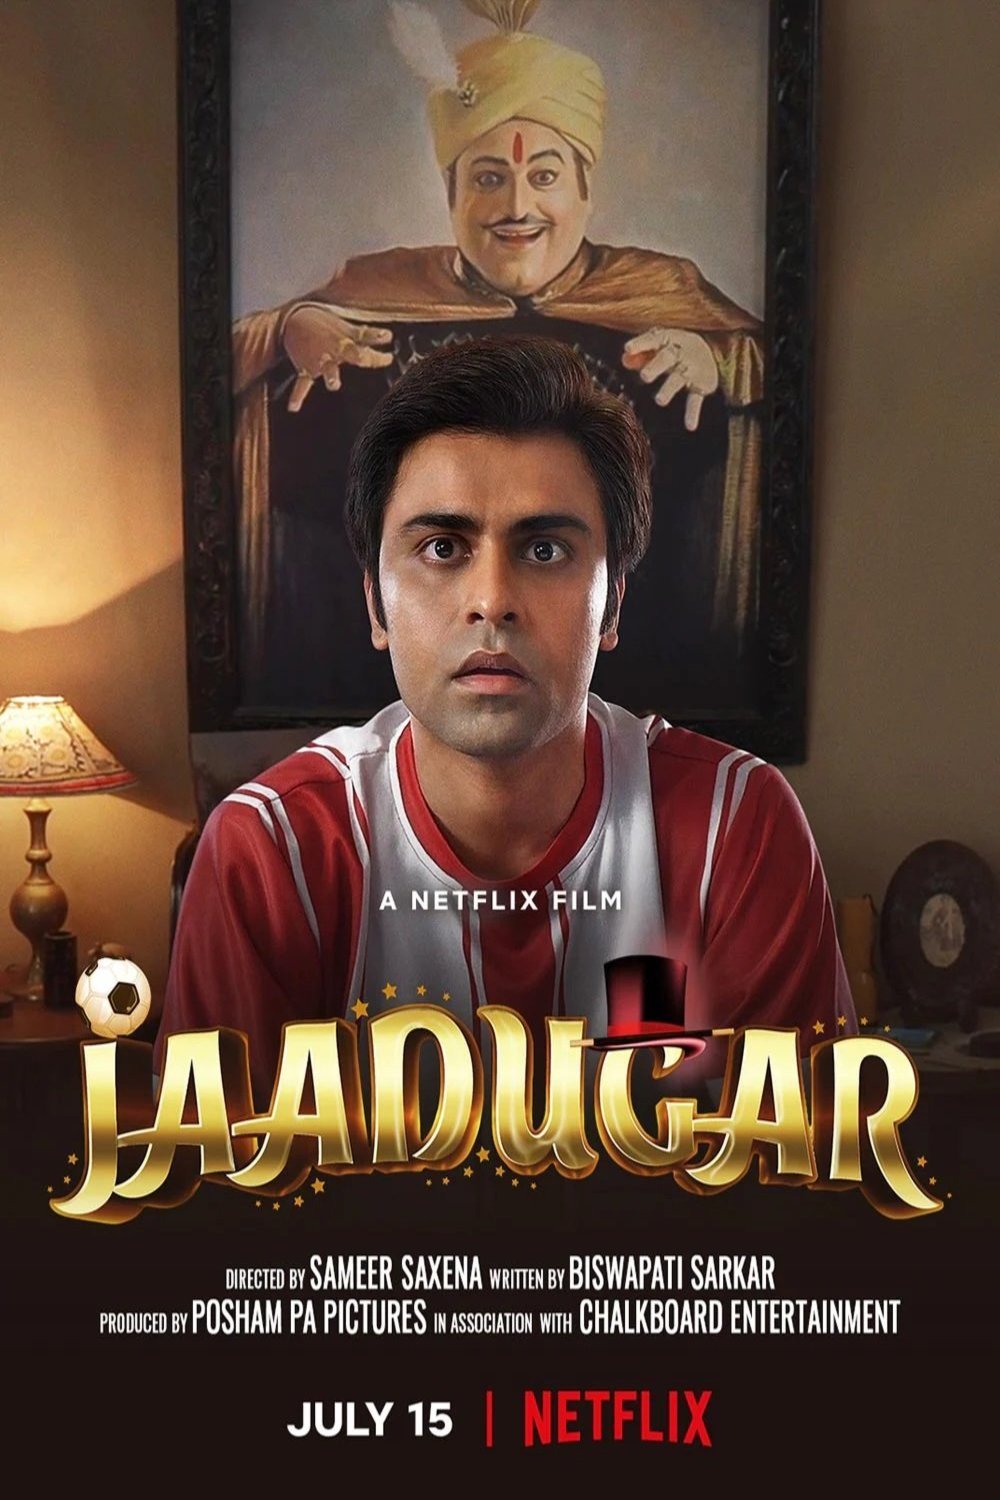 Hindi poster of the movie Jaadugar